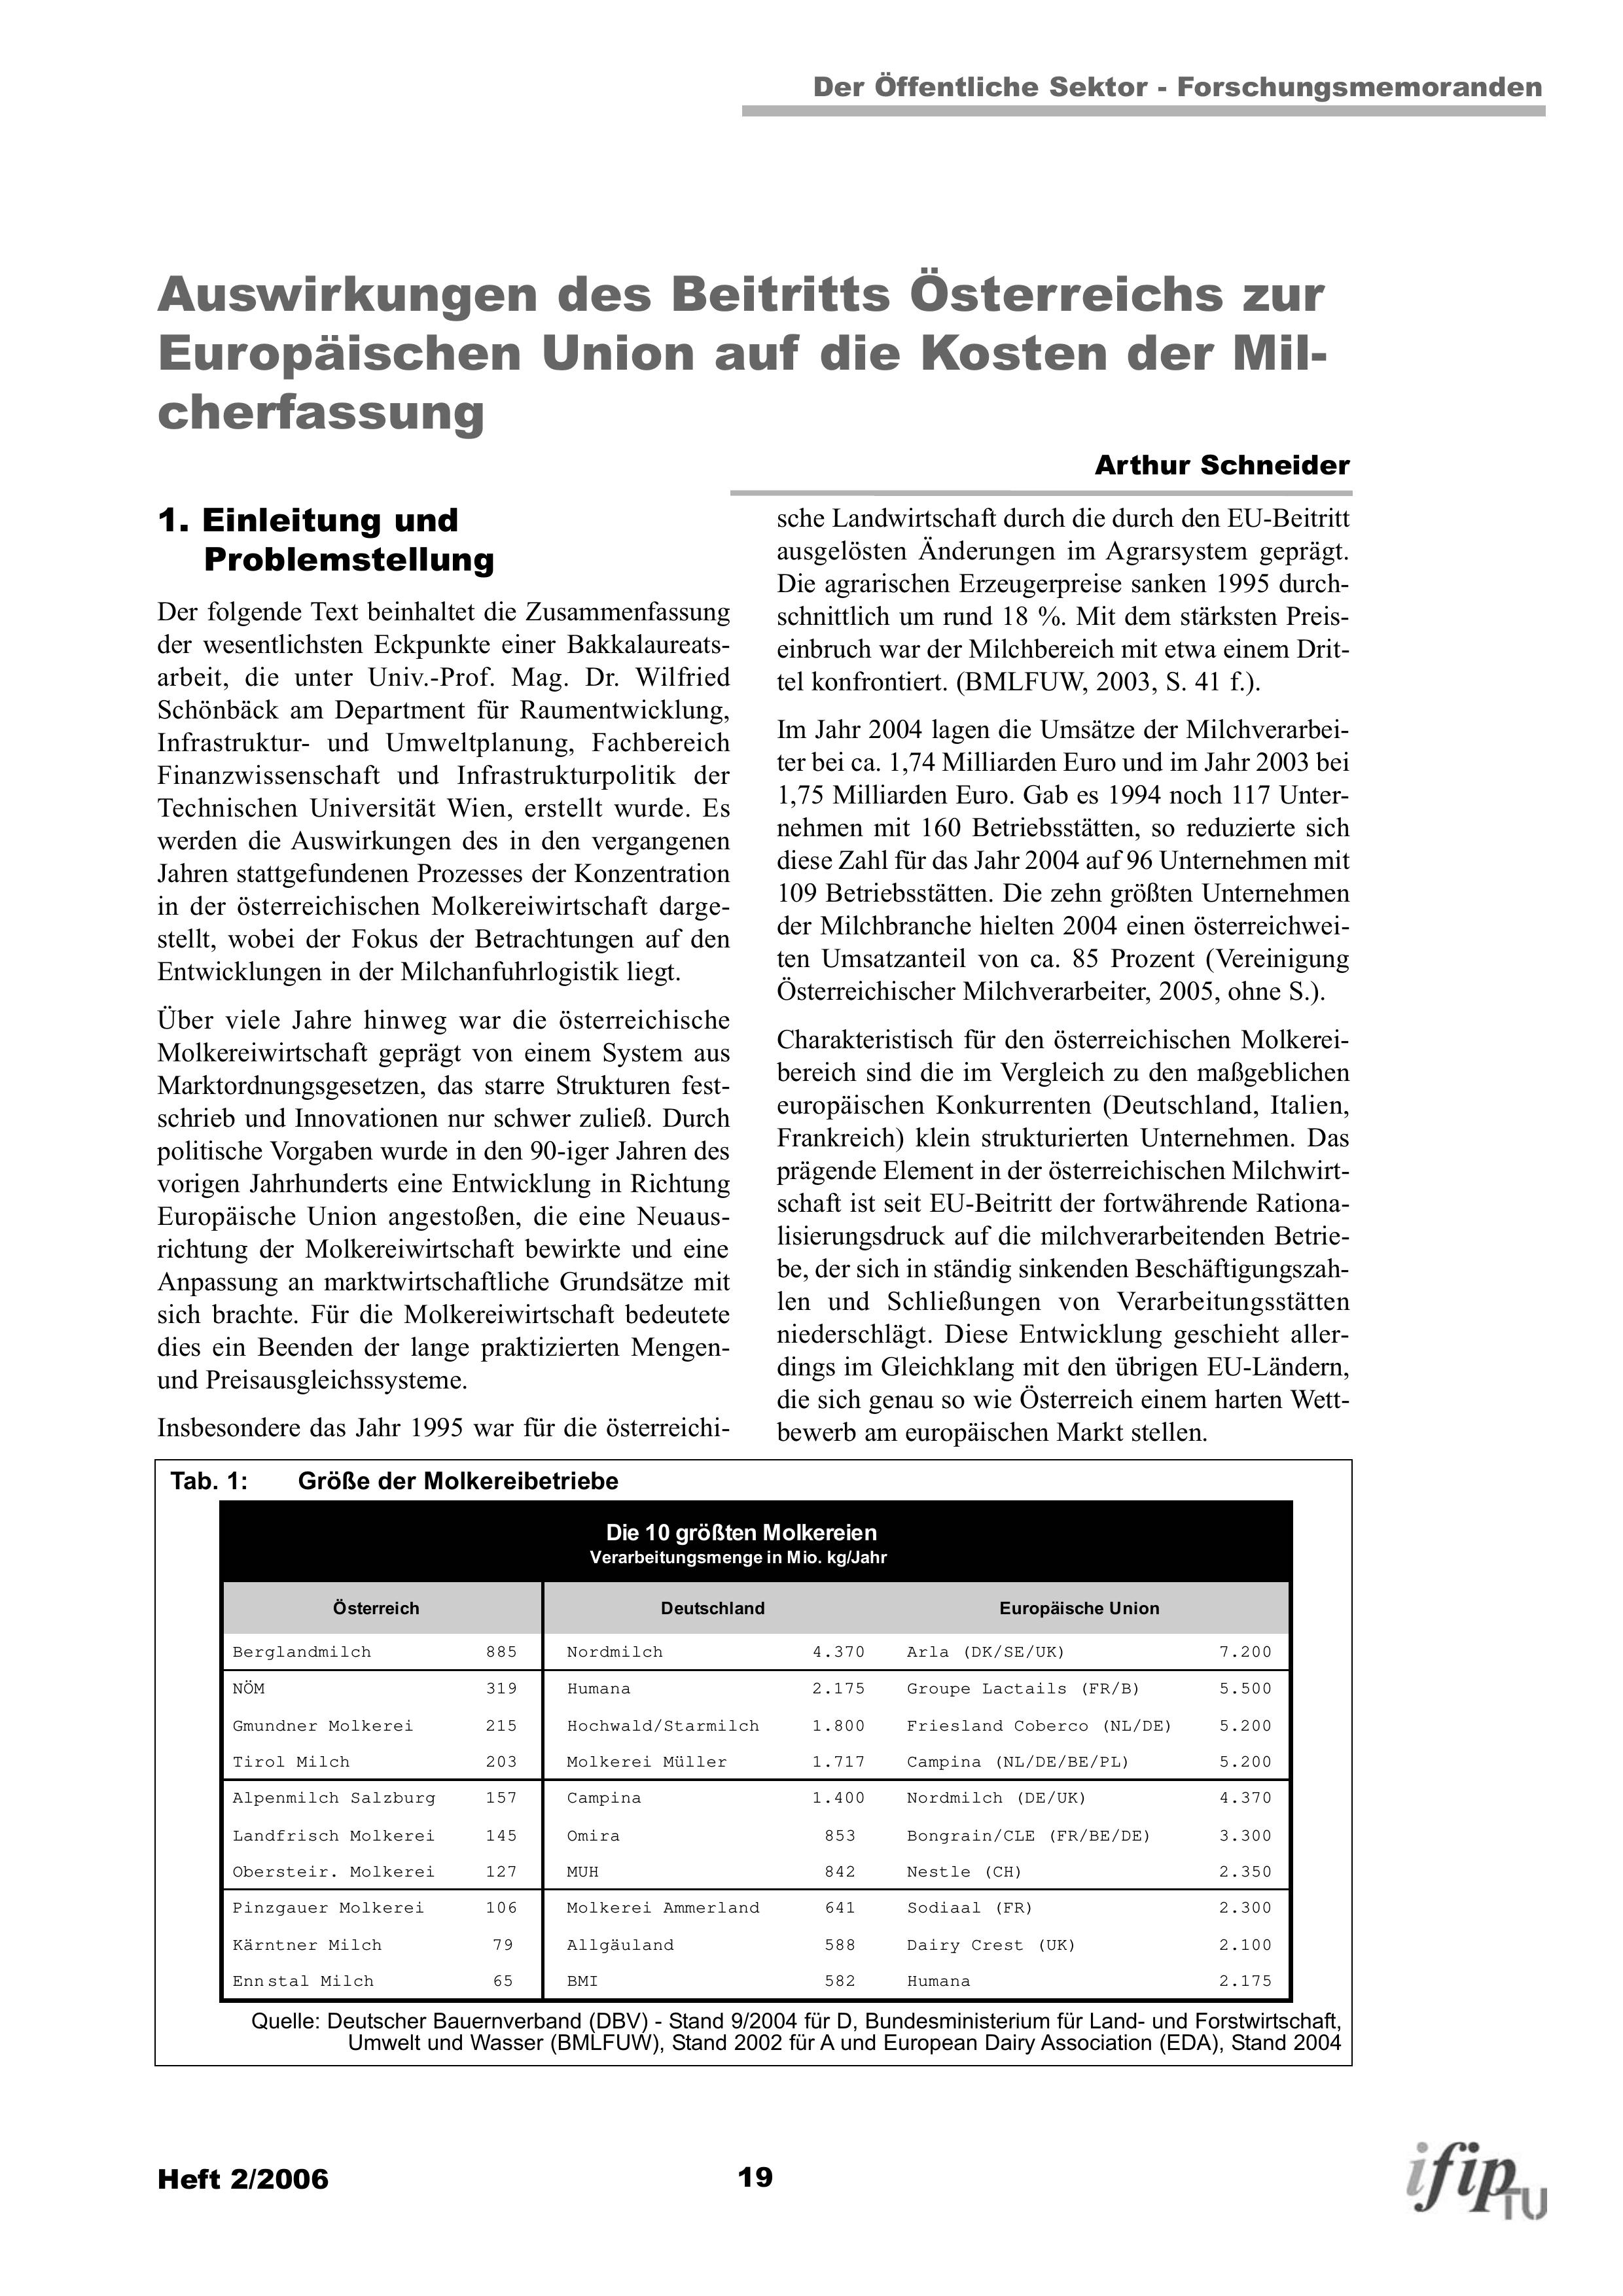 Auswirkungen des Beitritts Österreichs zur Europäischen Union auf die Kosten der Milcherfassung